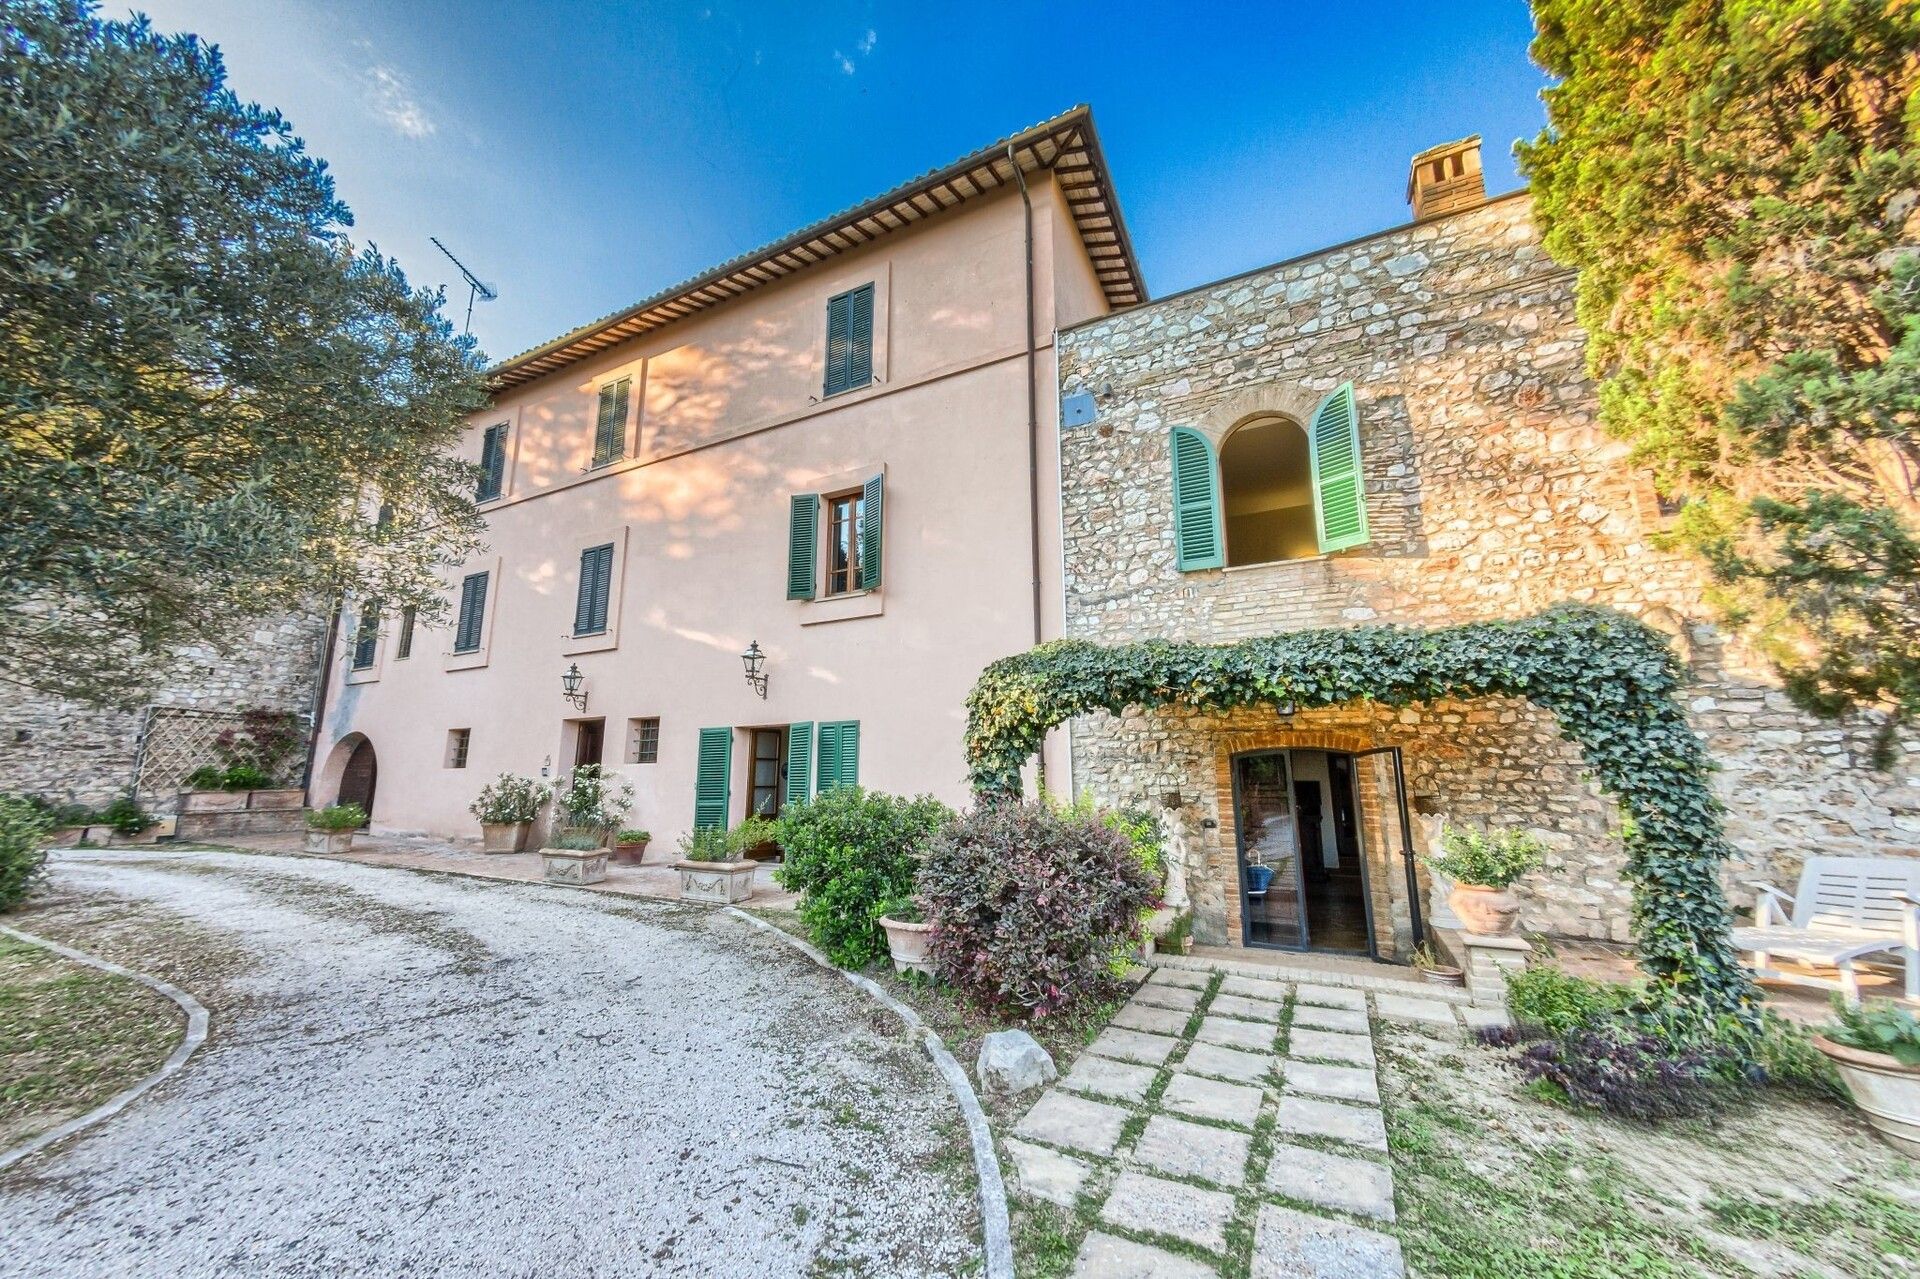 A vendre villa in zone tranquille Spello Umbria